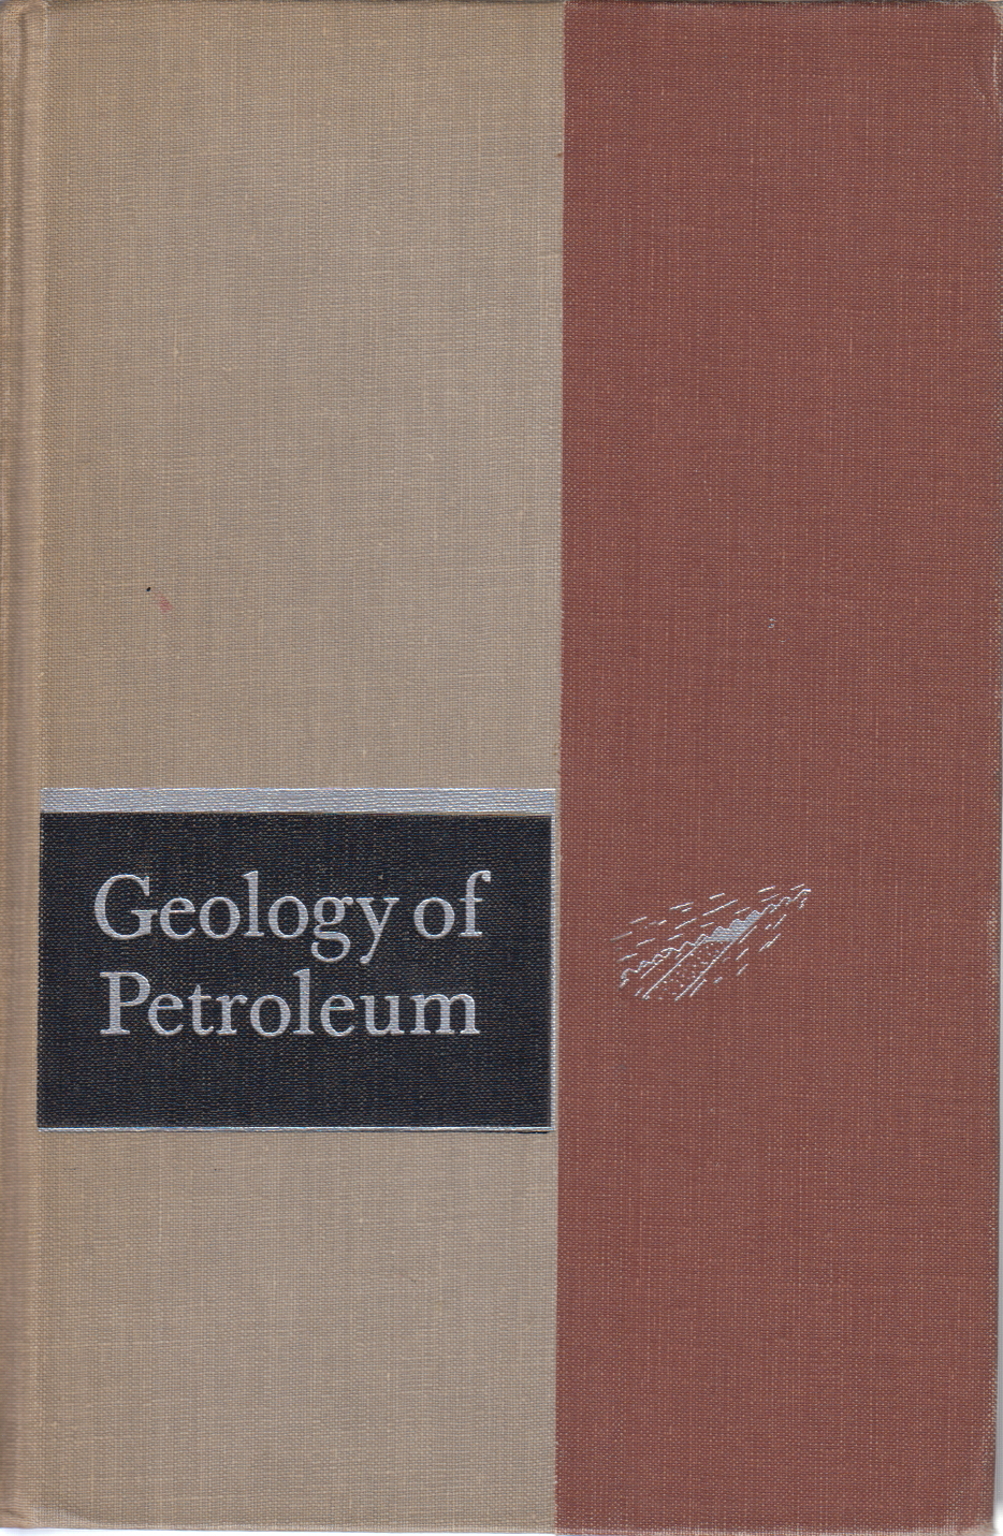 La géologie du pétrole, de l'A. I. Levorsen